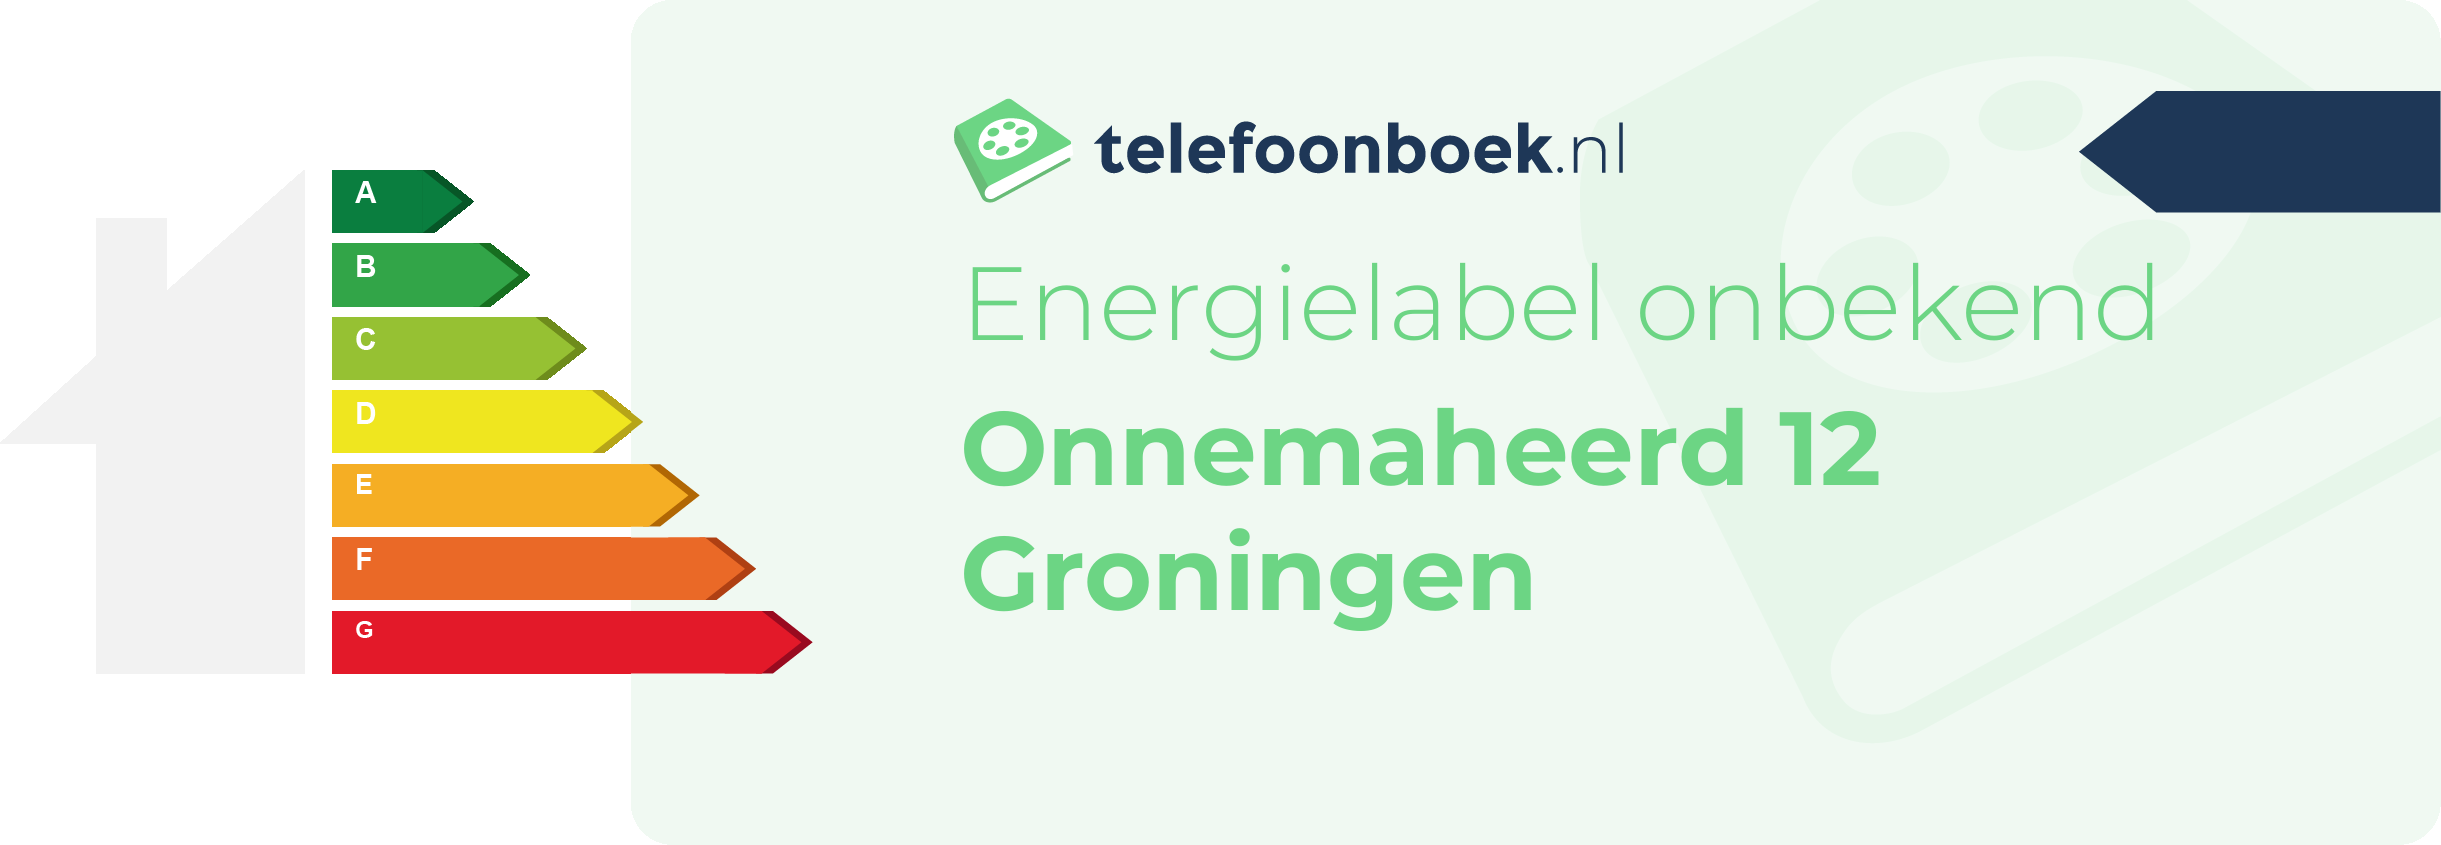 Energielabel Onnemaheerd 12 Groningen